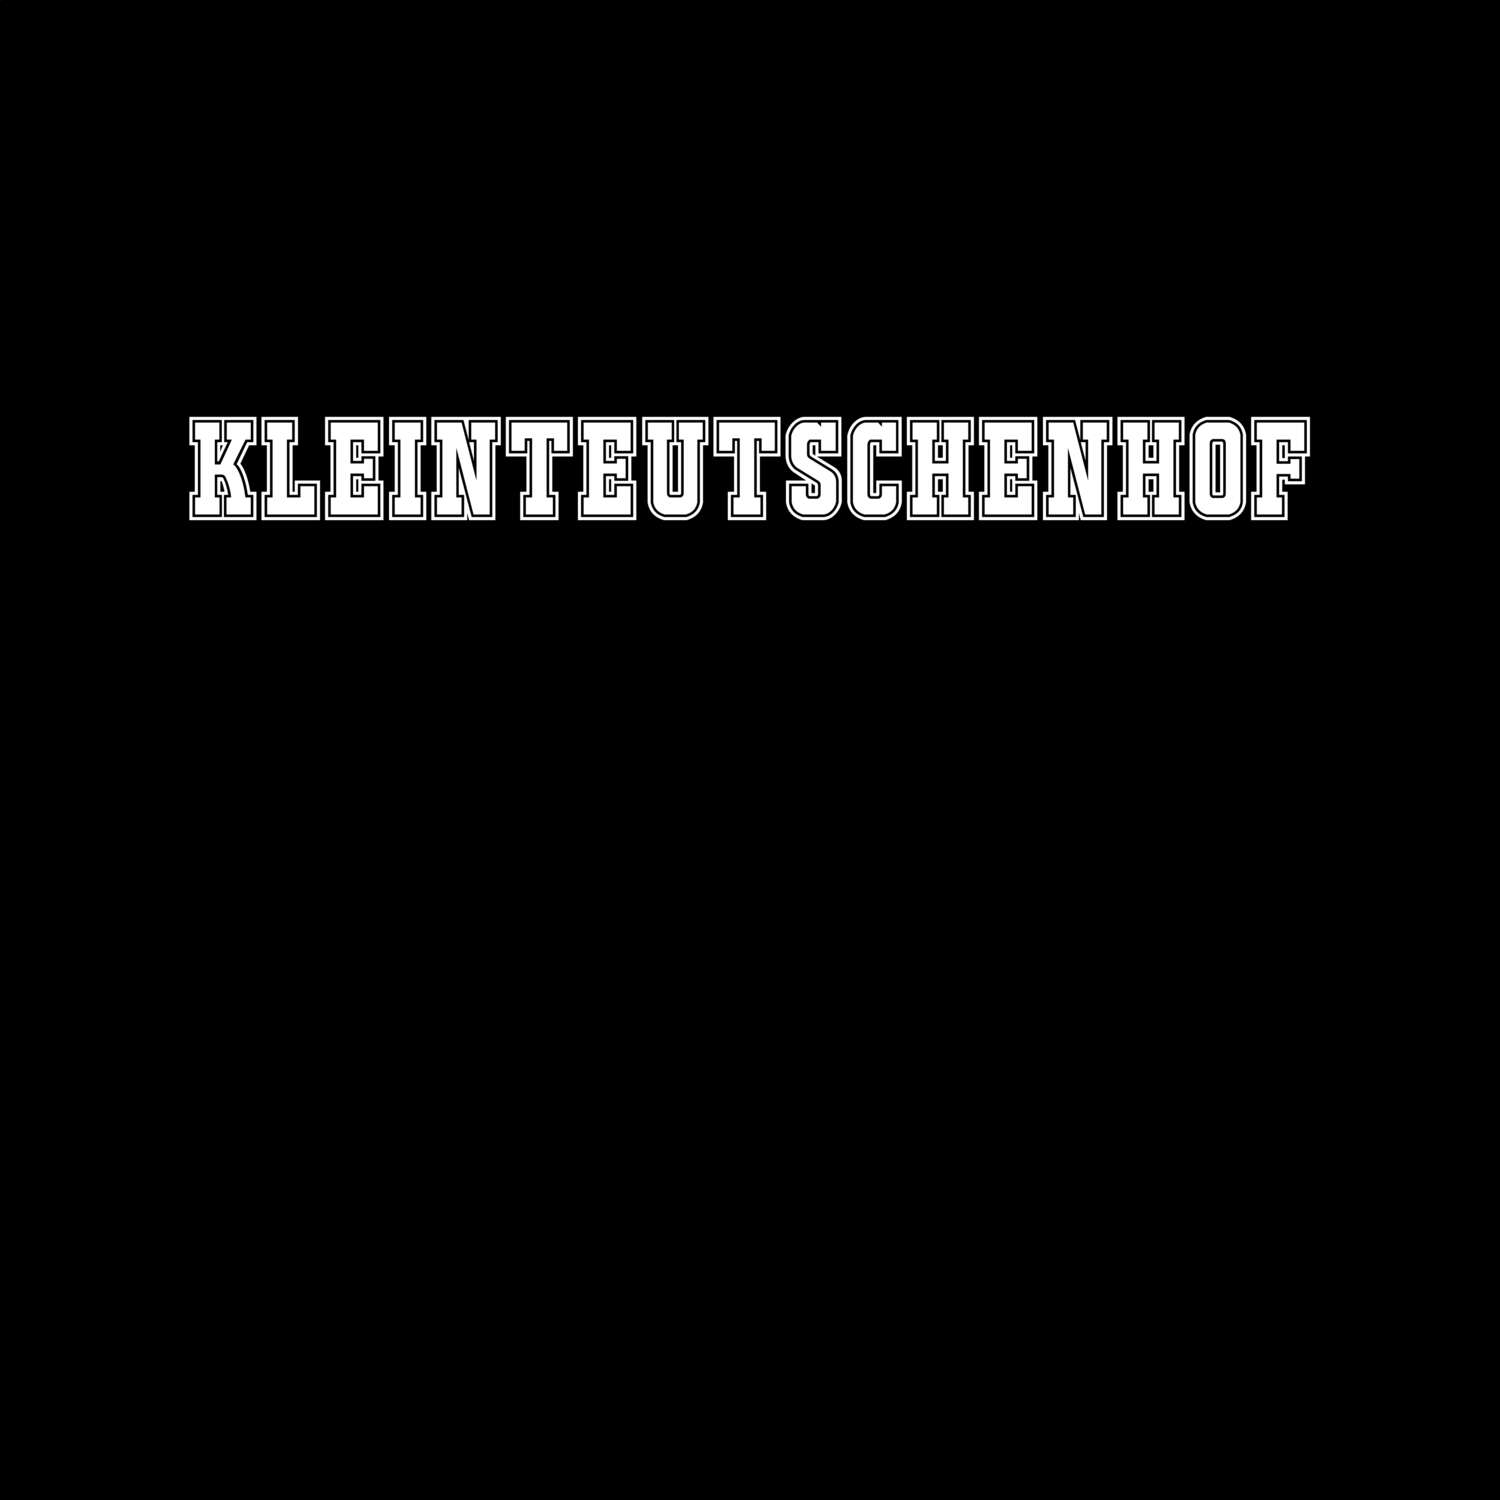 Kleinteutschenhof T-Shirt »Classic«